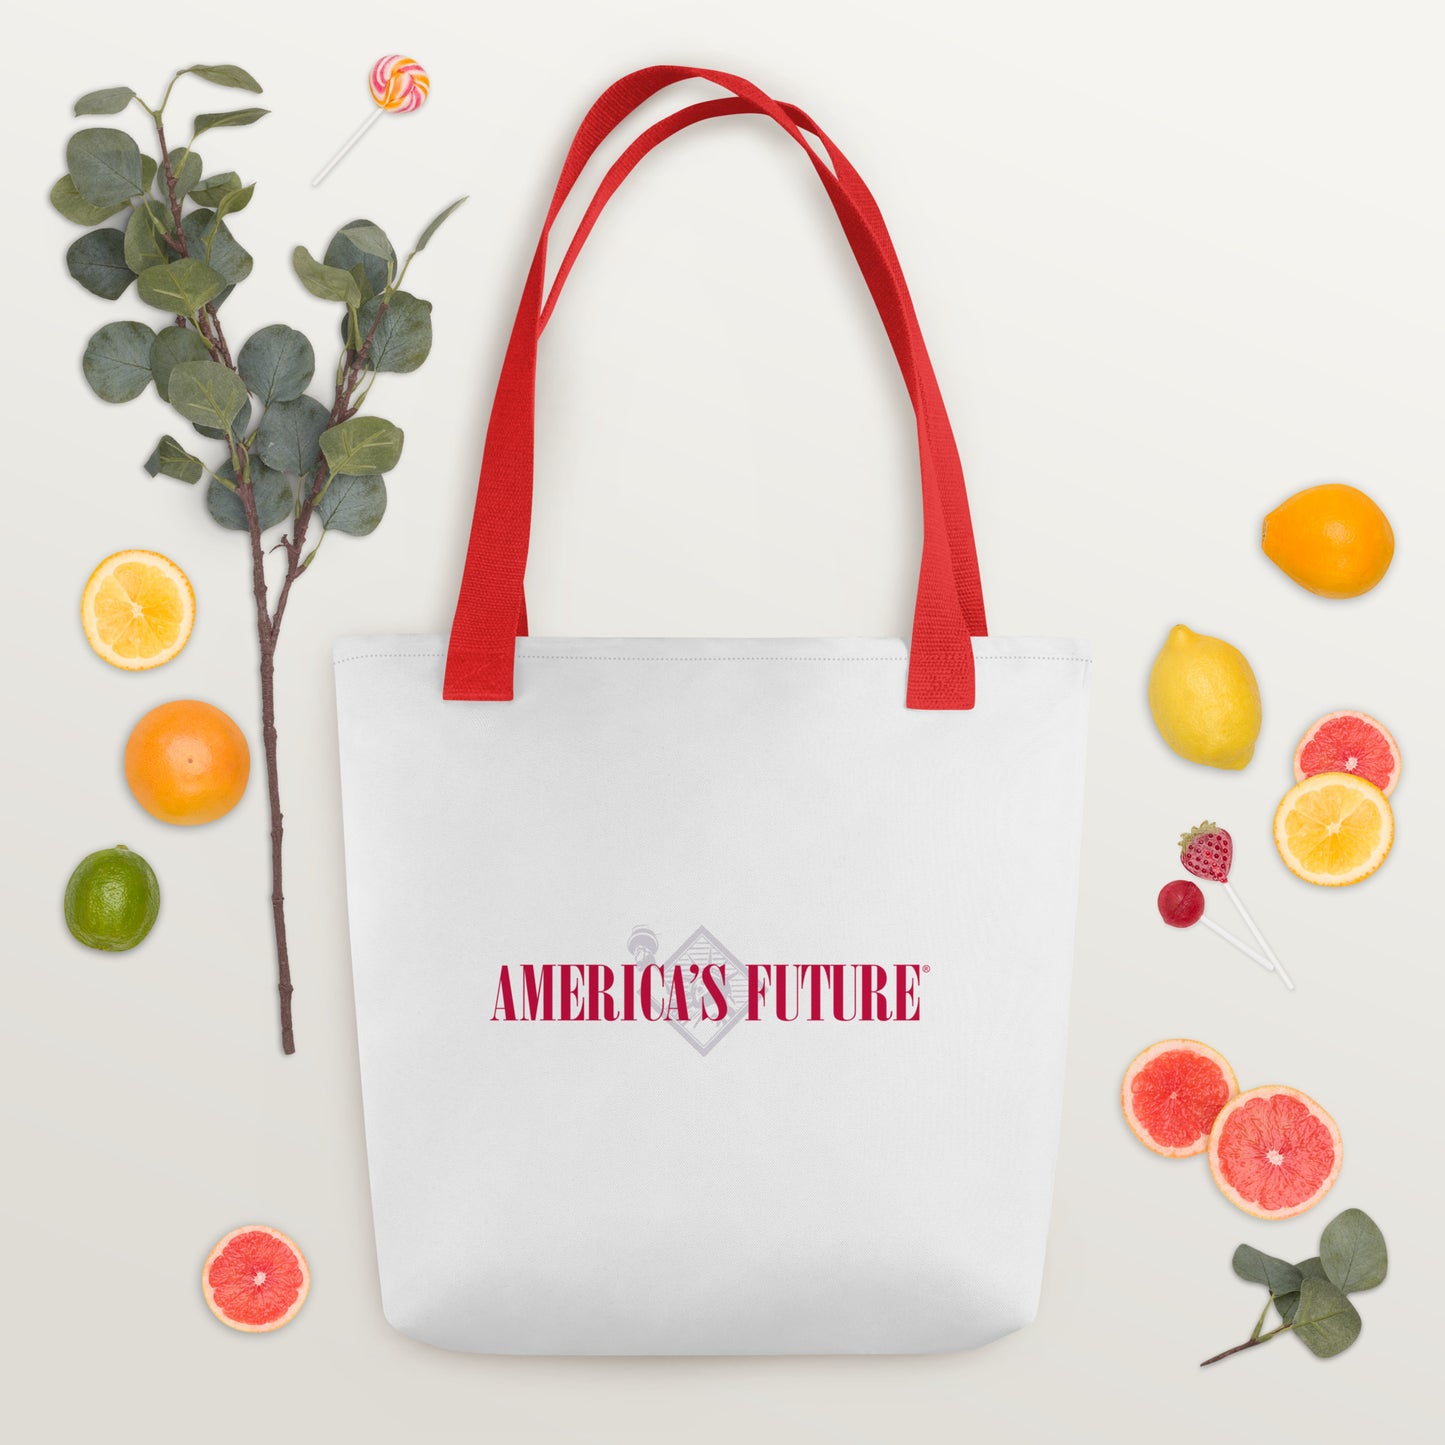 America's Future - Tote bag